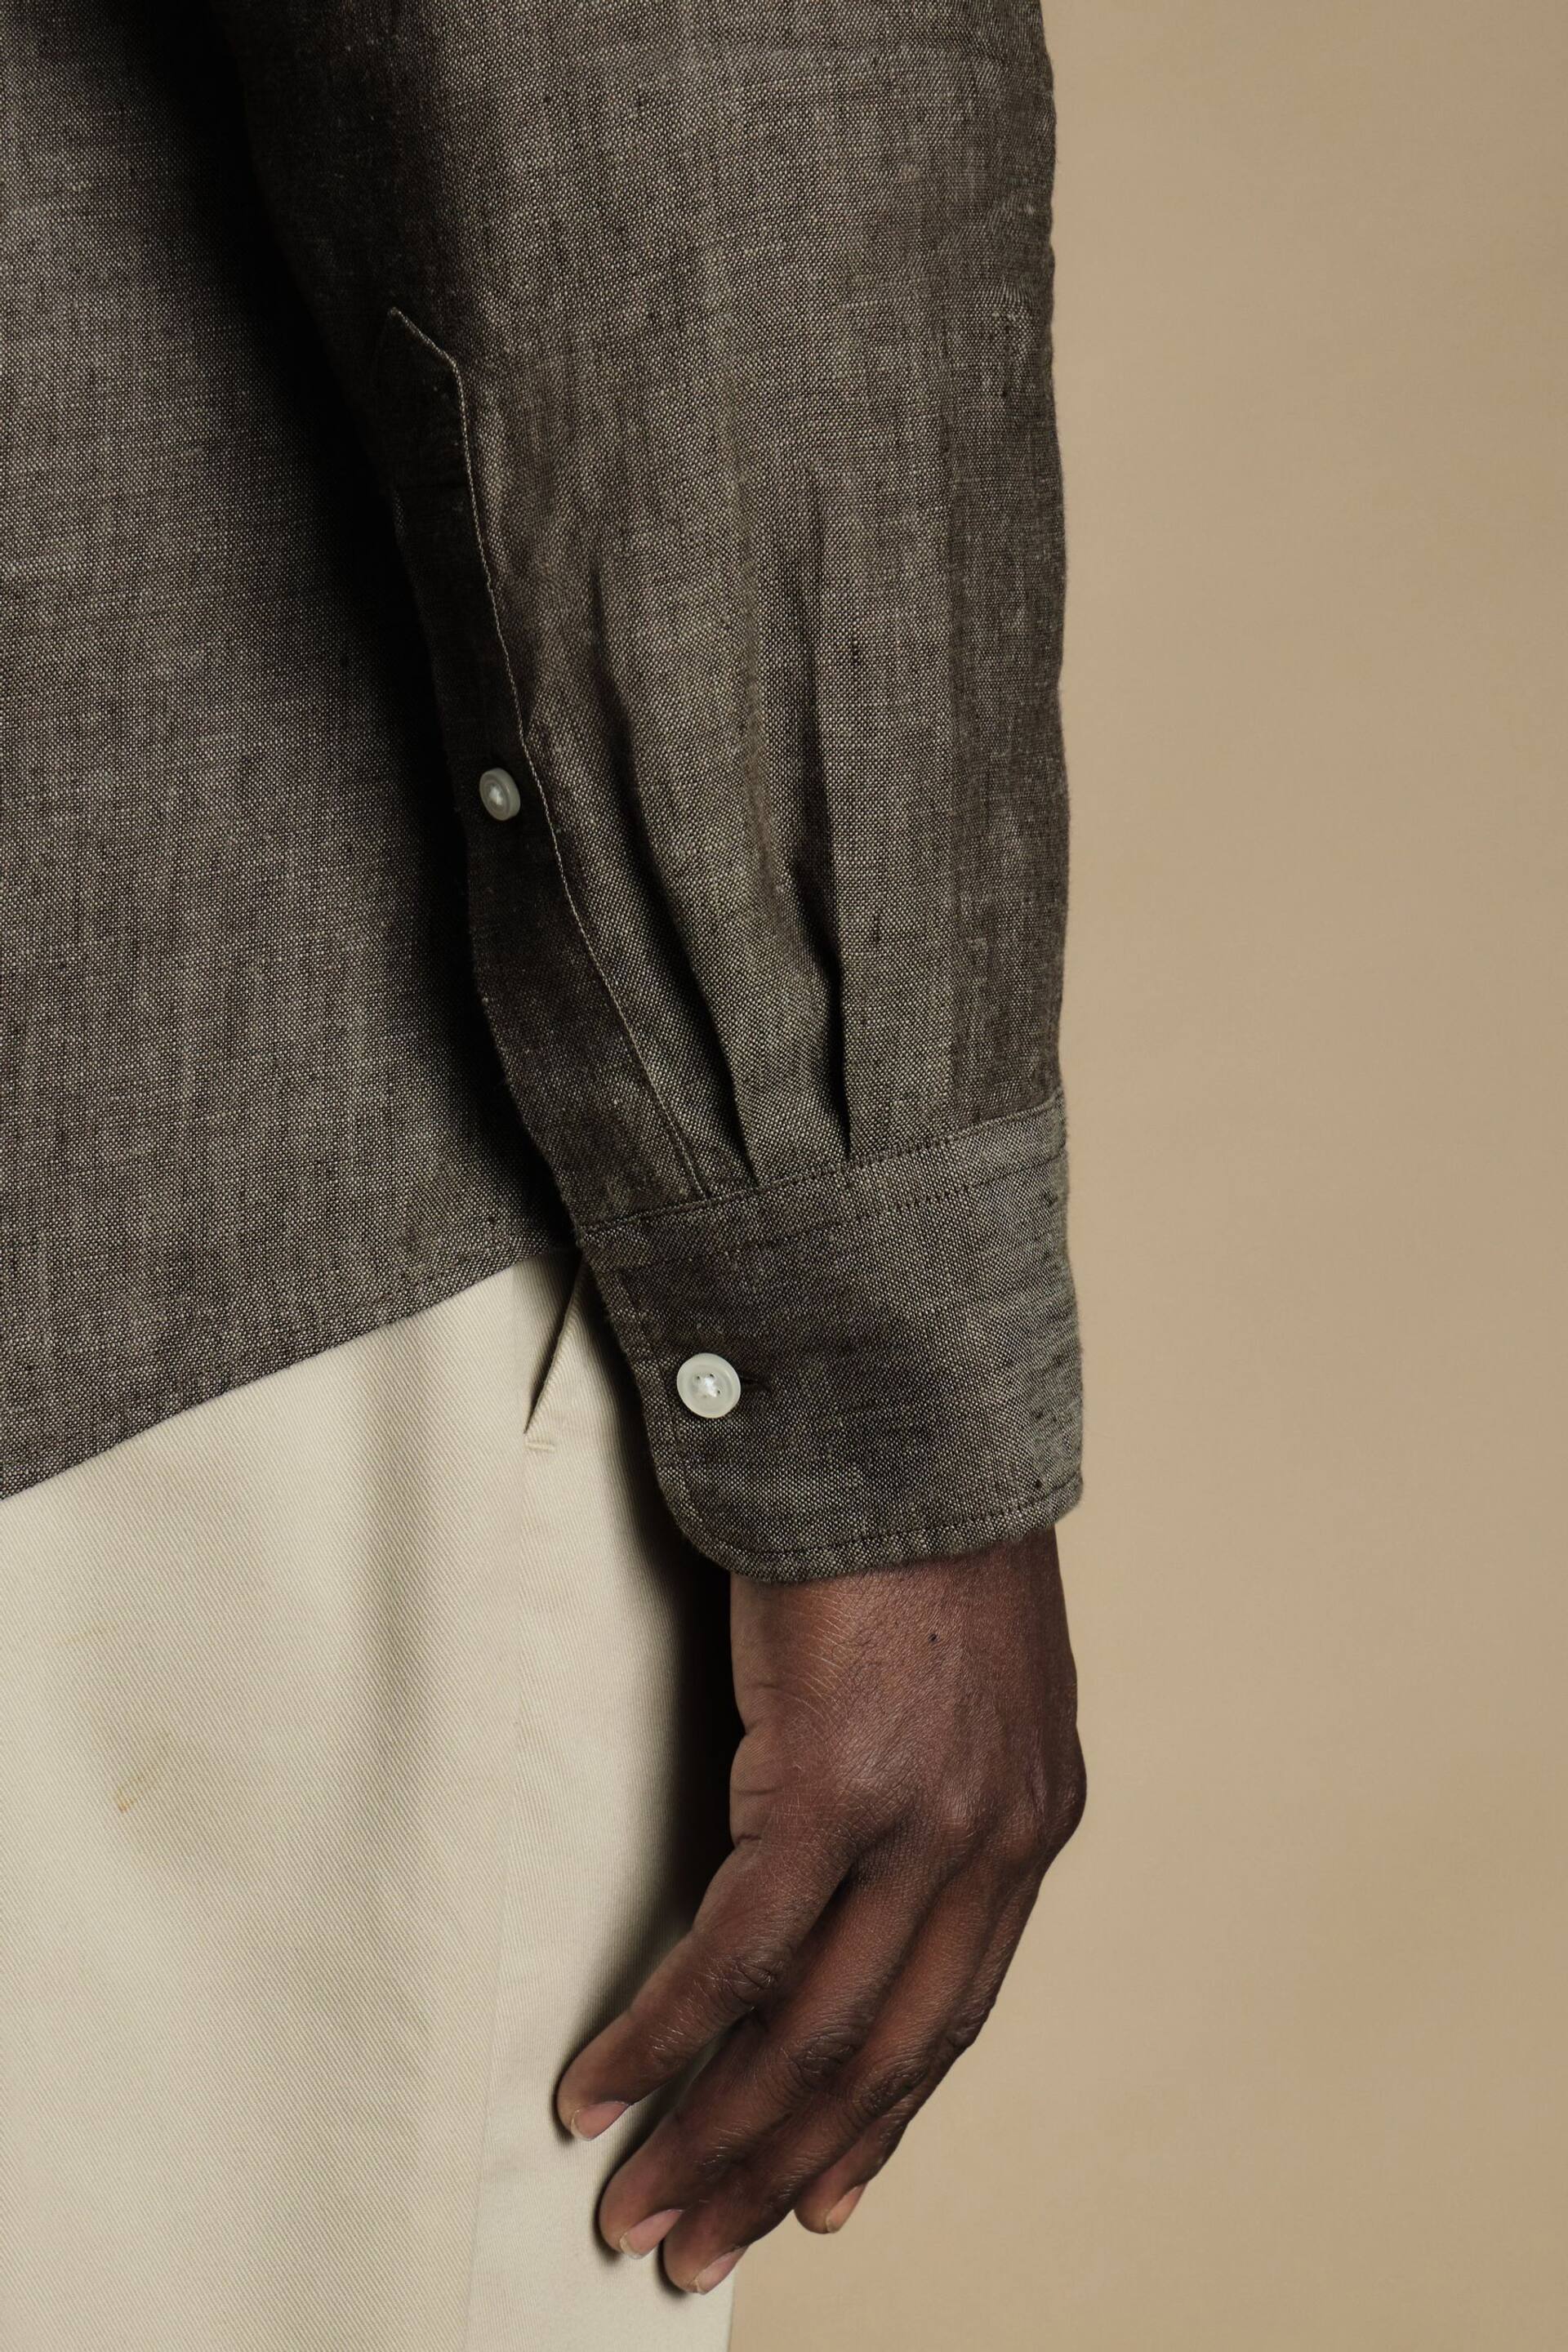 Charles Tyrwhitt Brown Slim Fit Plain Short Sleeve Pure Linen Full Sleeves Shirt - Image 3 of 6